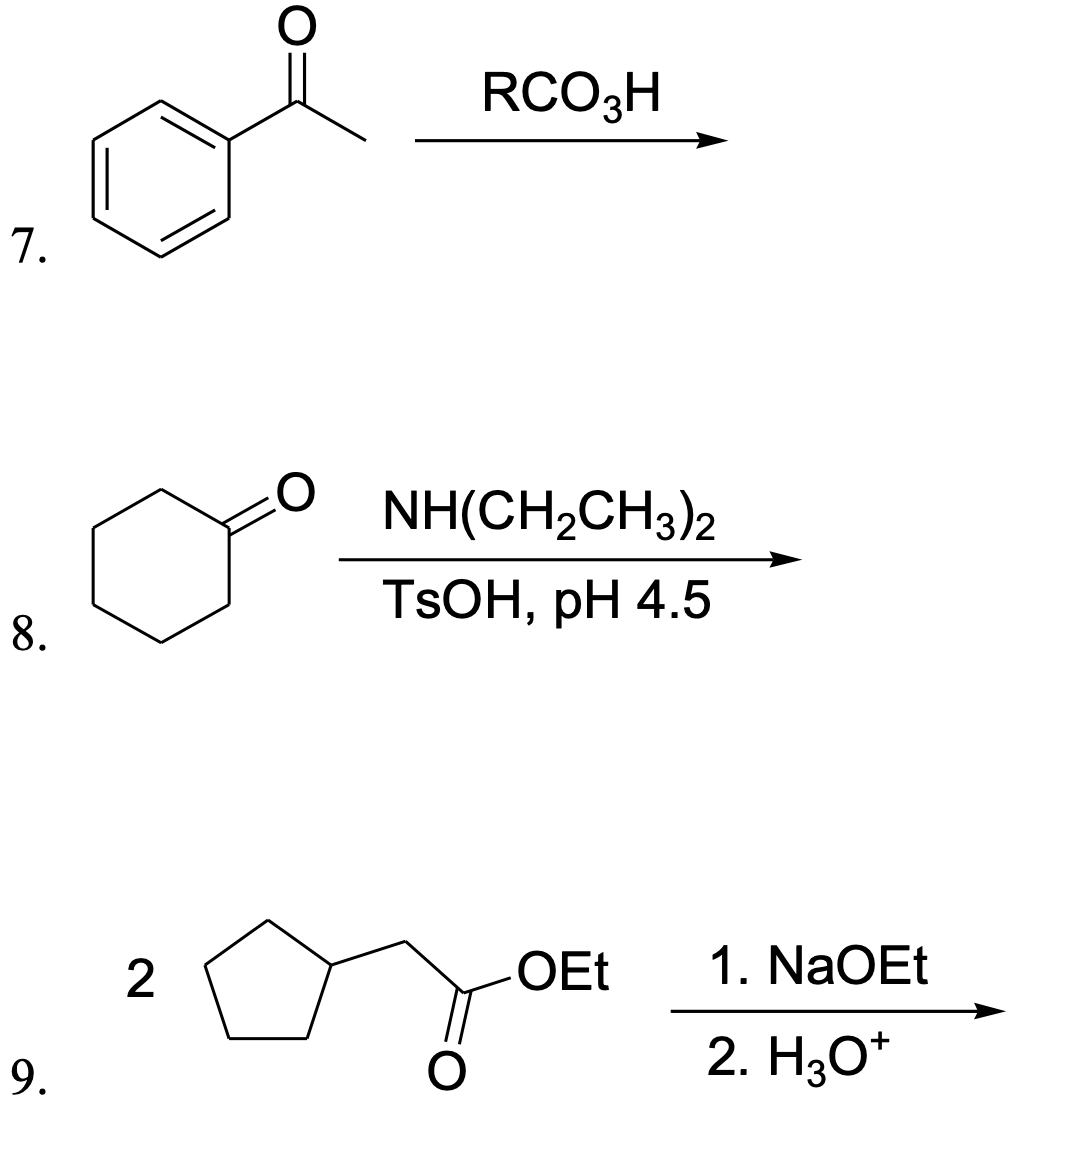 RCO3H
7.
NH(CH,CH3)2
TSOH, pH 4.5
8.
OEt
1. NaOEt
2. H30*
9.
